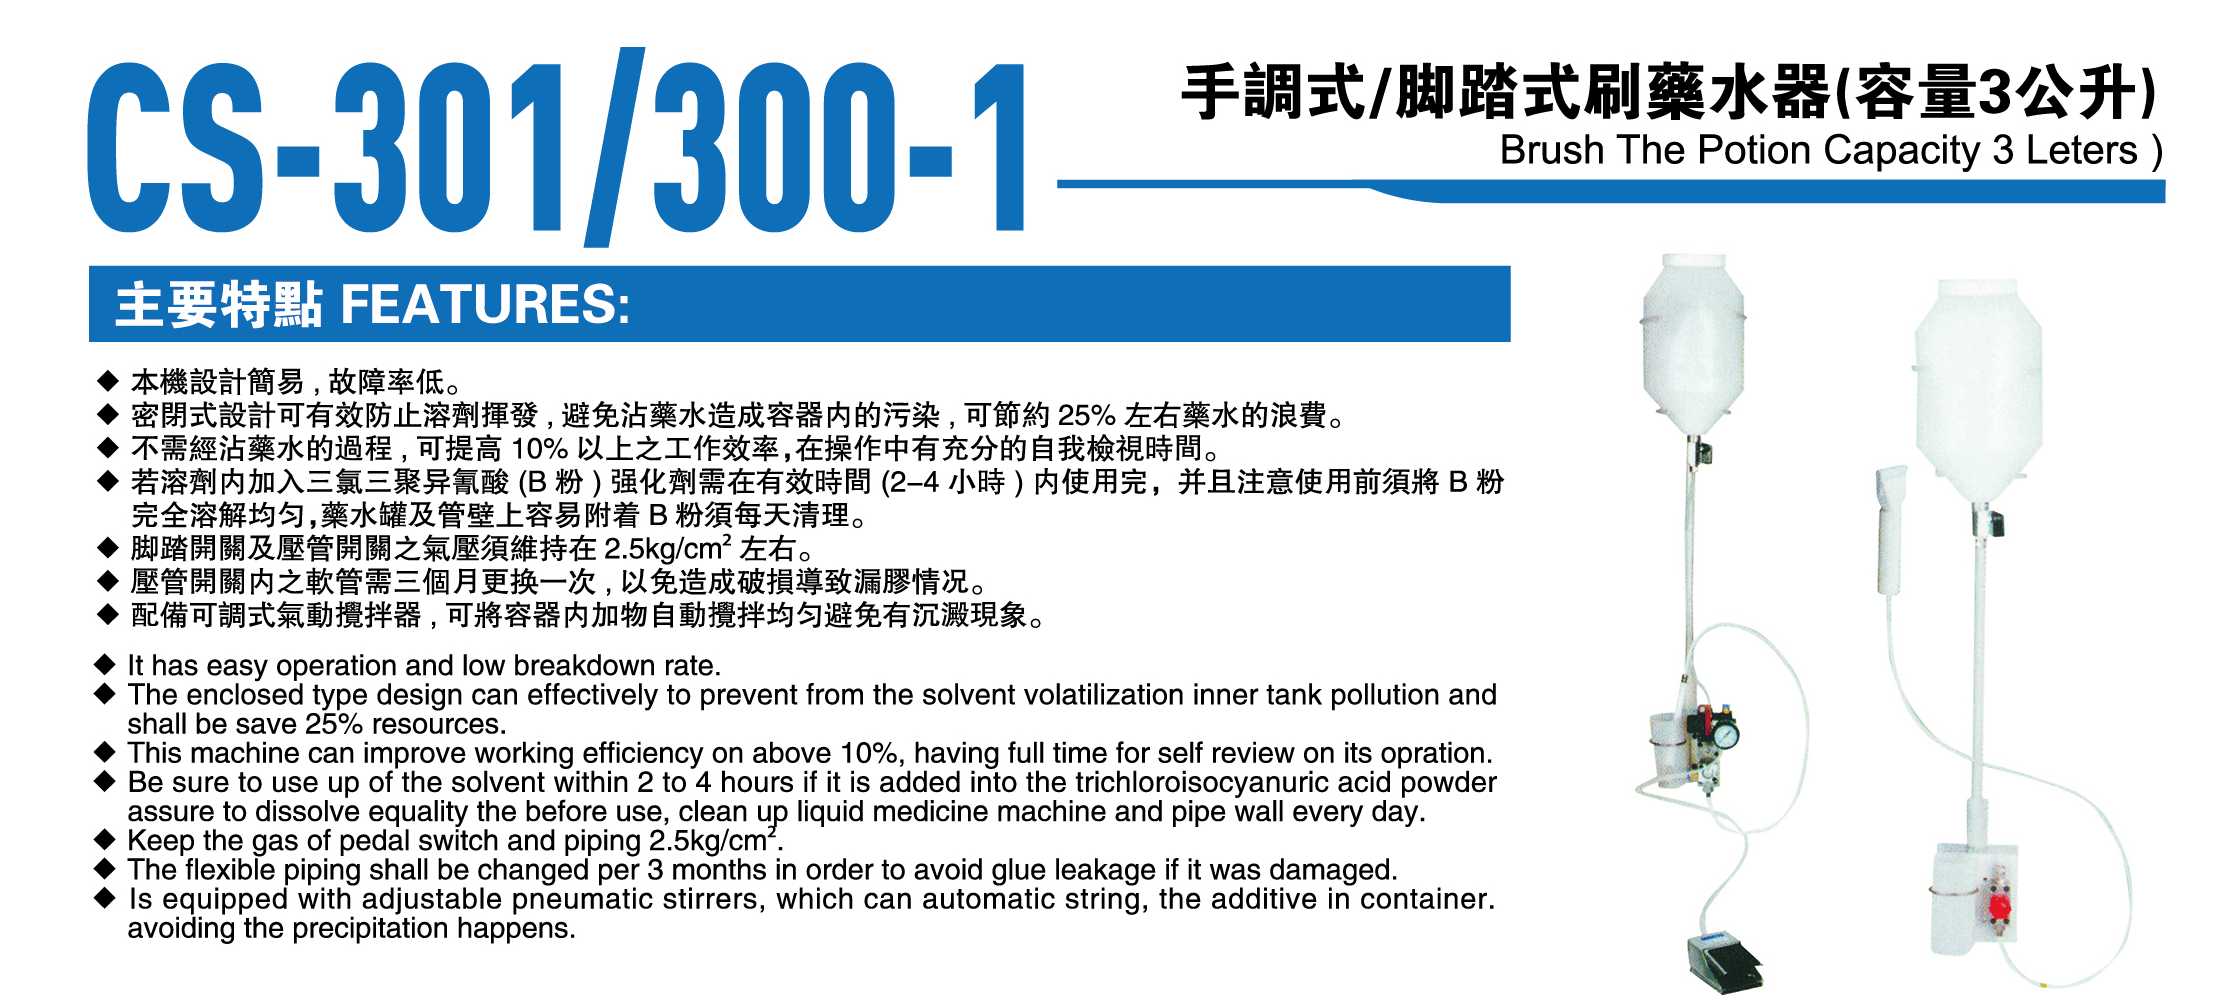 CS-301/300-1